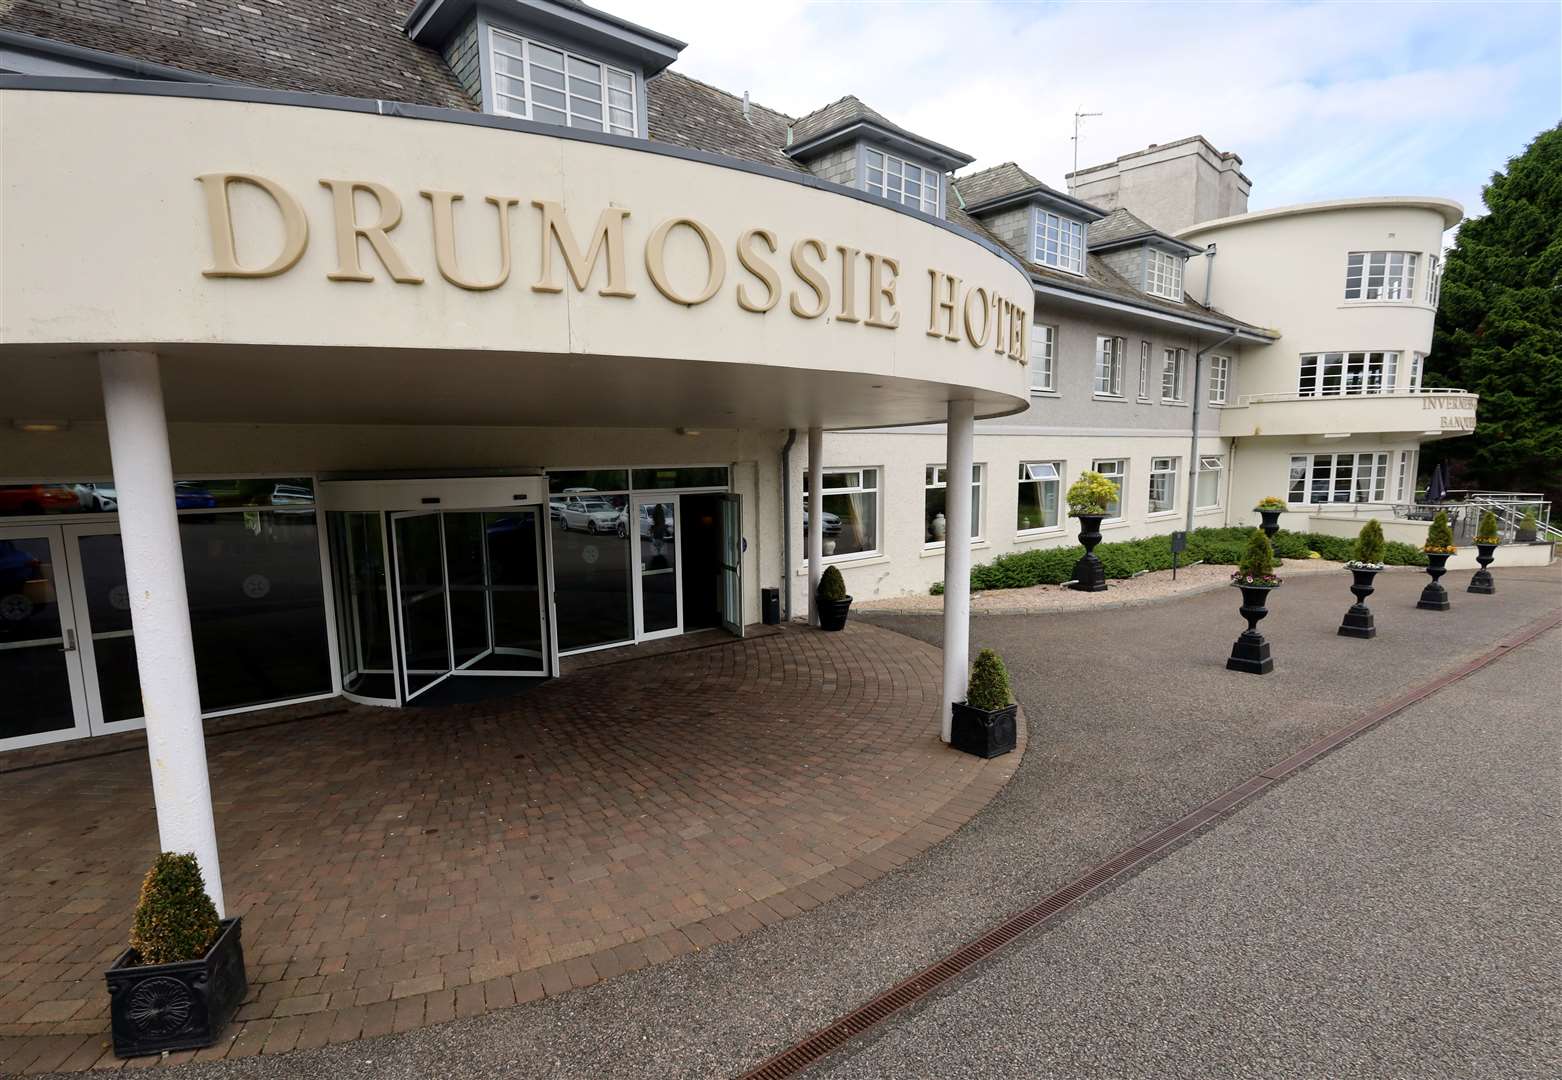 Drumossie hotel locator.  Pictured: James Mackenzie.